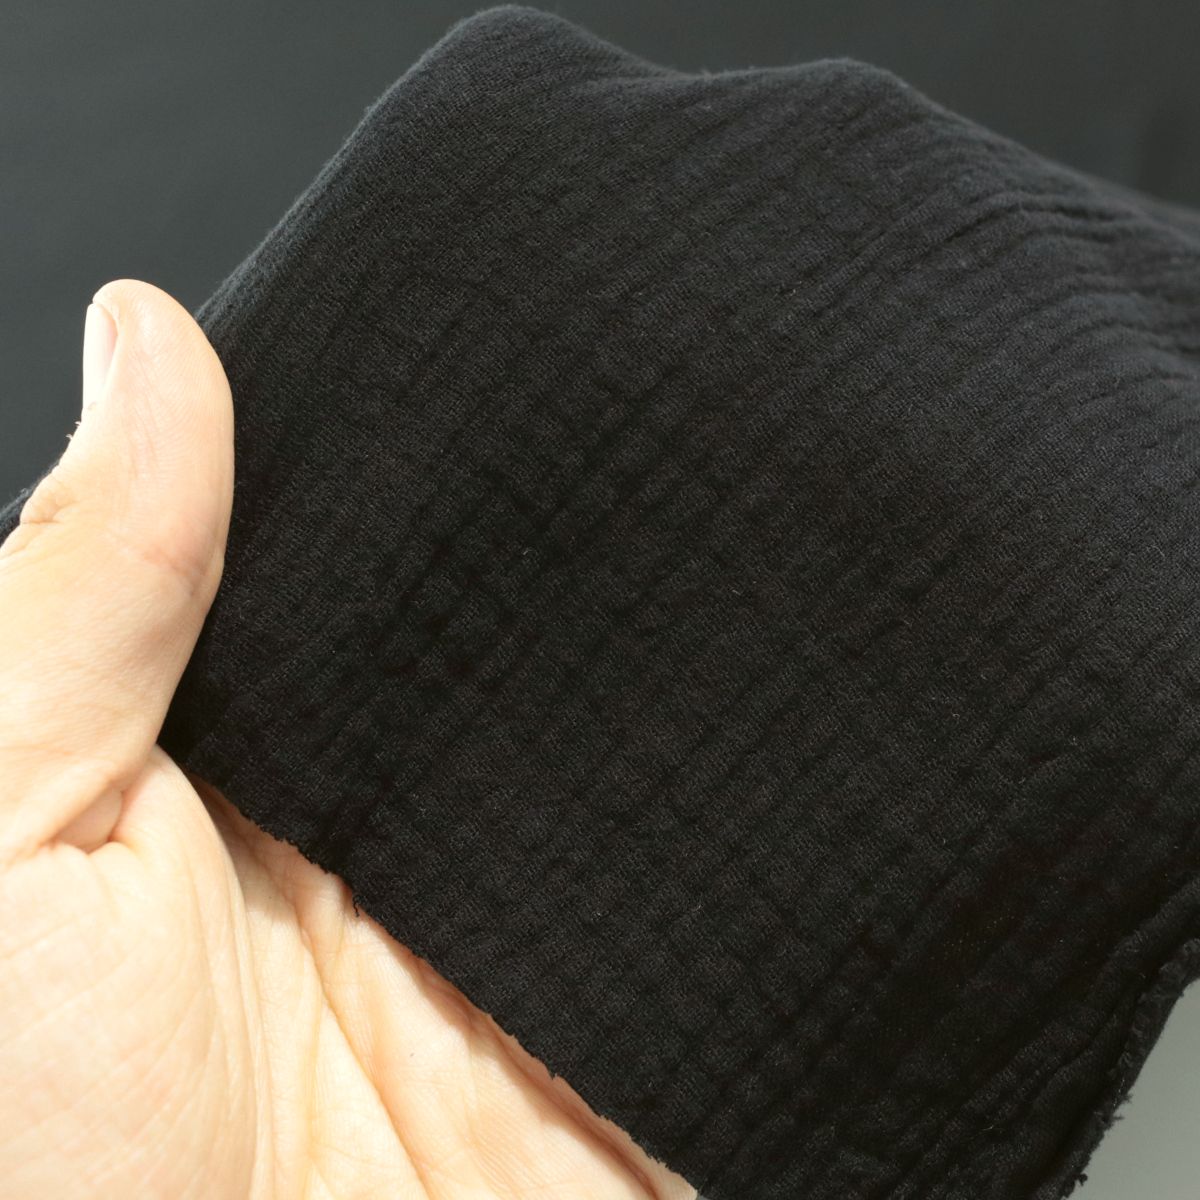 schwarzer Musselin/Gauze weicher Baumwollstoff zweilagig Kleider-Blusenstoff